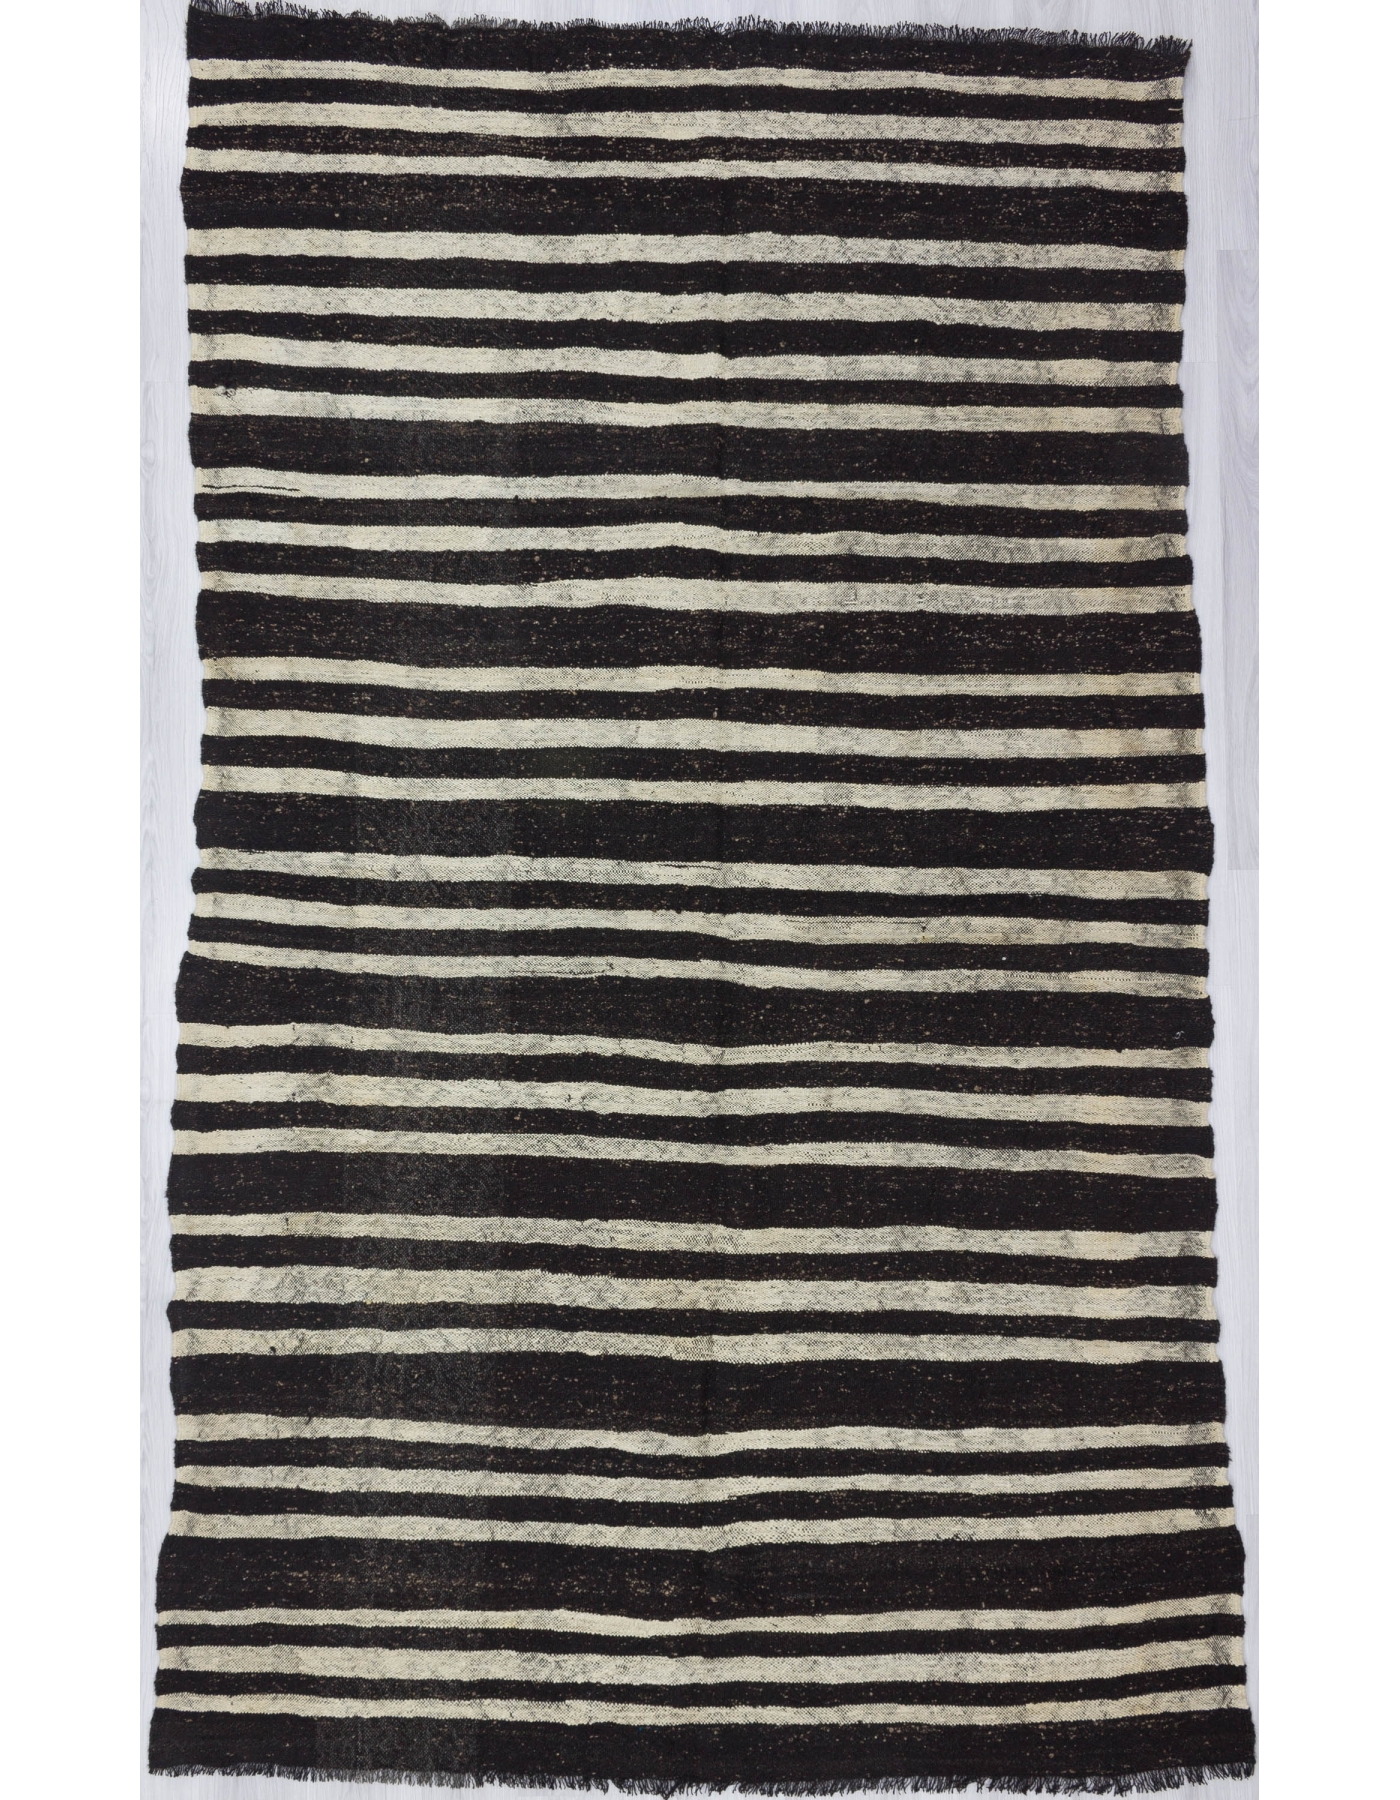 black and white striped dress australia